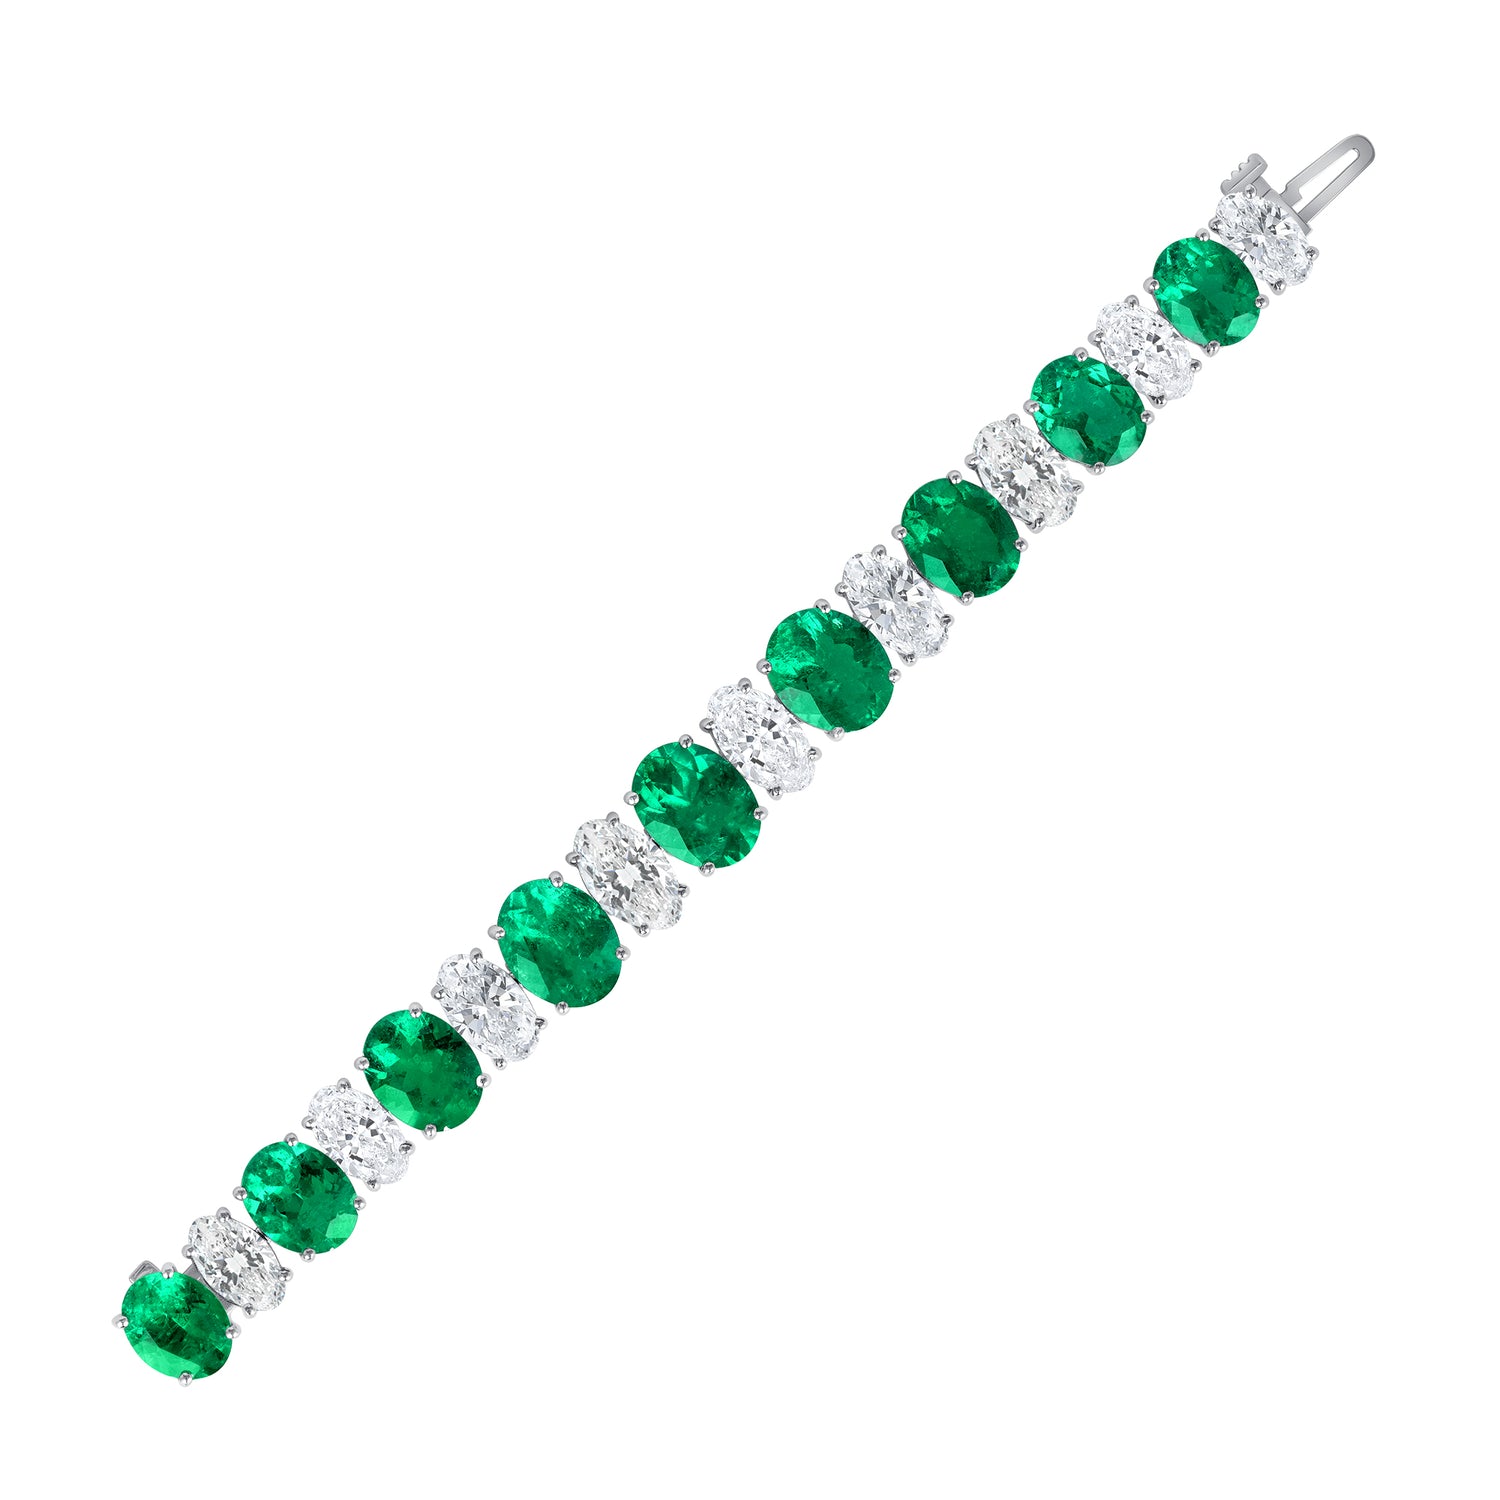 Oval Cut Colombian Emerald and Oval Cut Diamond Platinum Bracelet